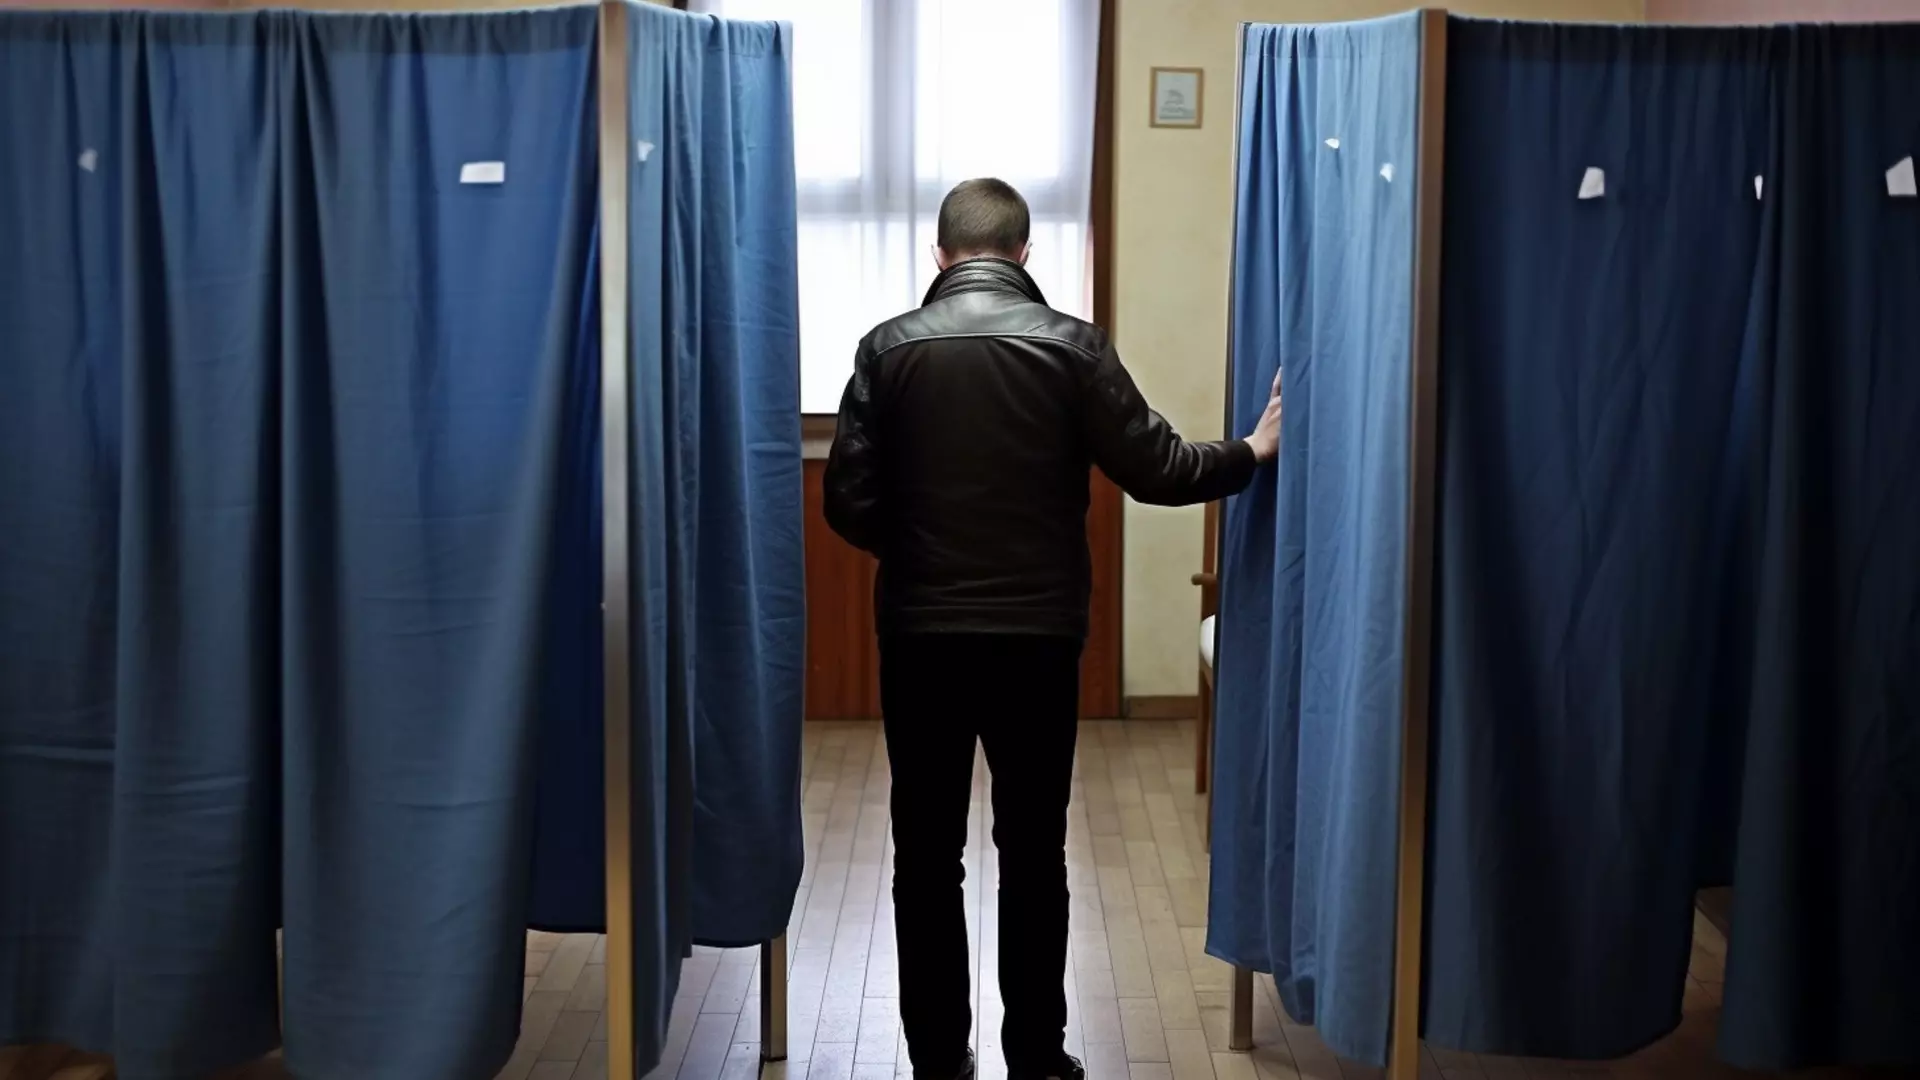 Явка избирателей в Свердловской области составила 21% 15 марта в 15:00